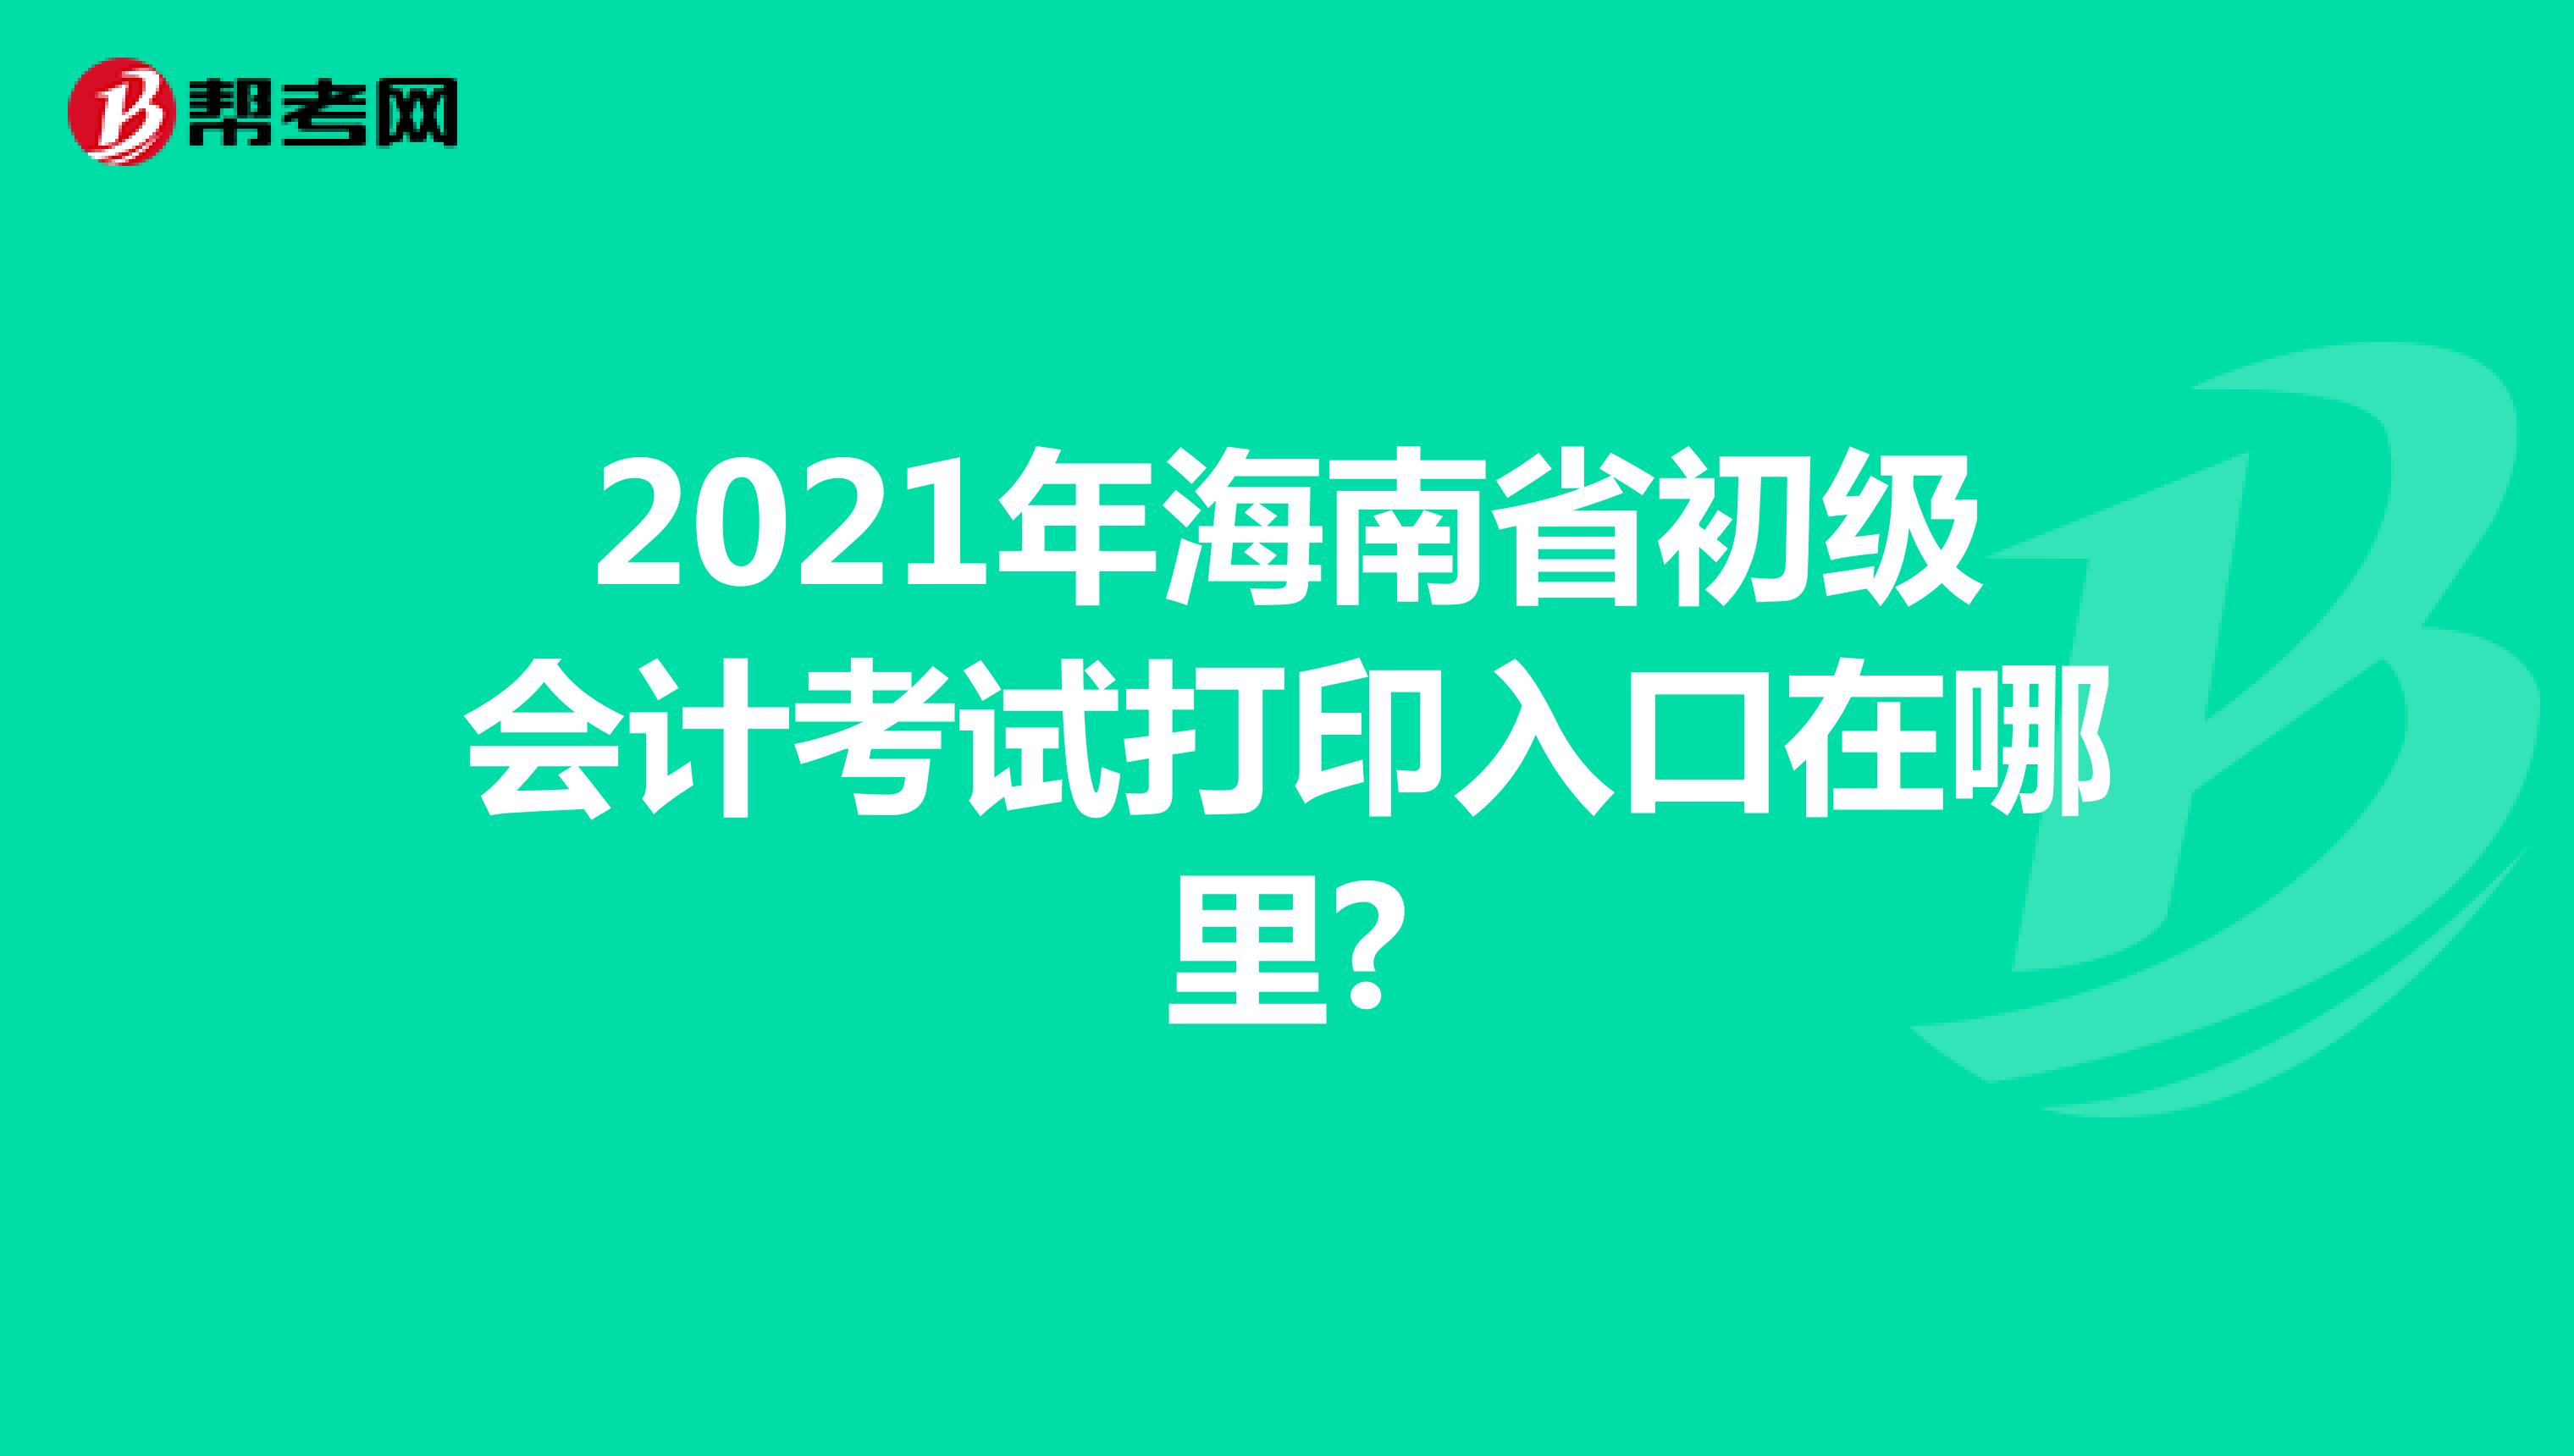 2021年海南省初级会计考试打印入口在哪里?